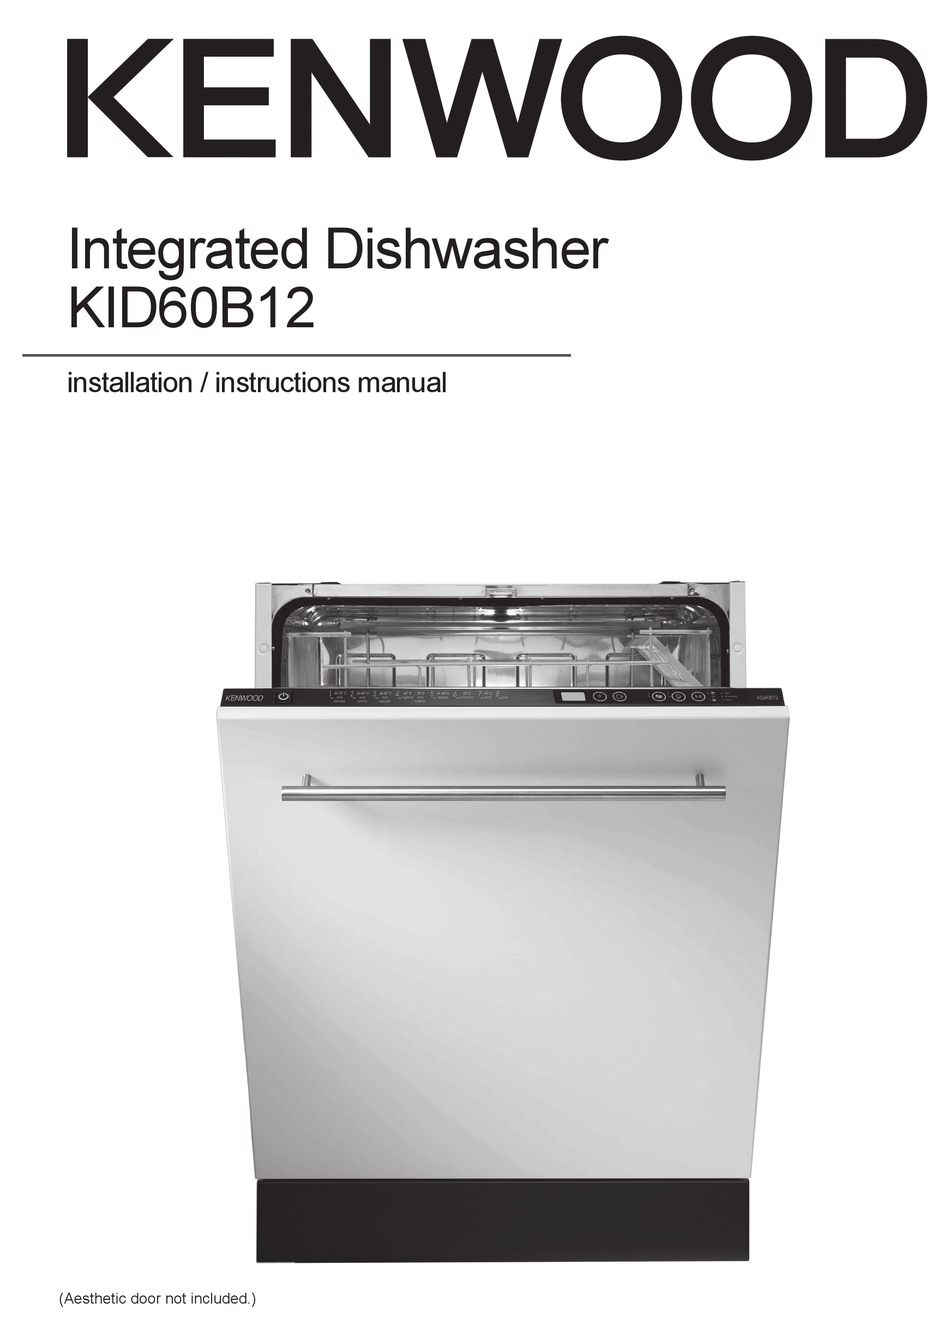 kenwood integrated dishwasher handbook template